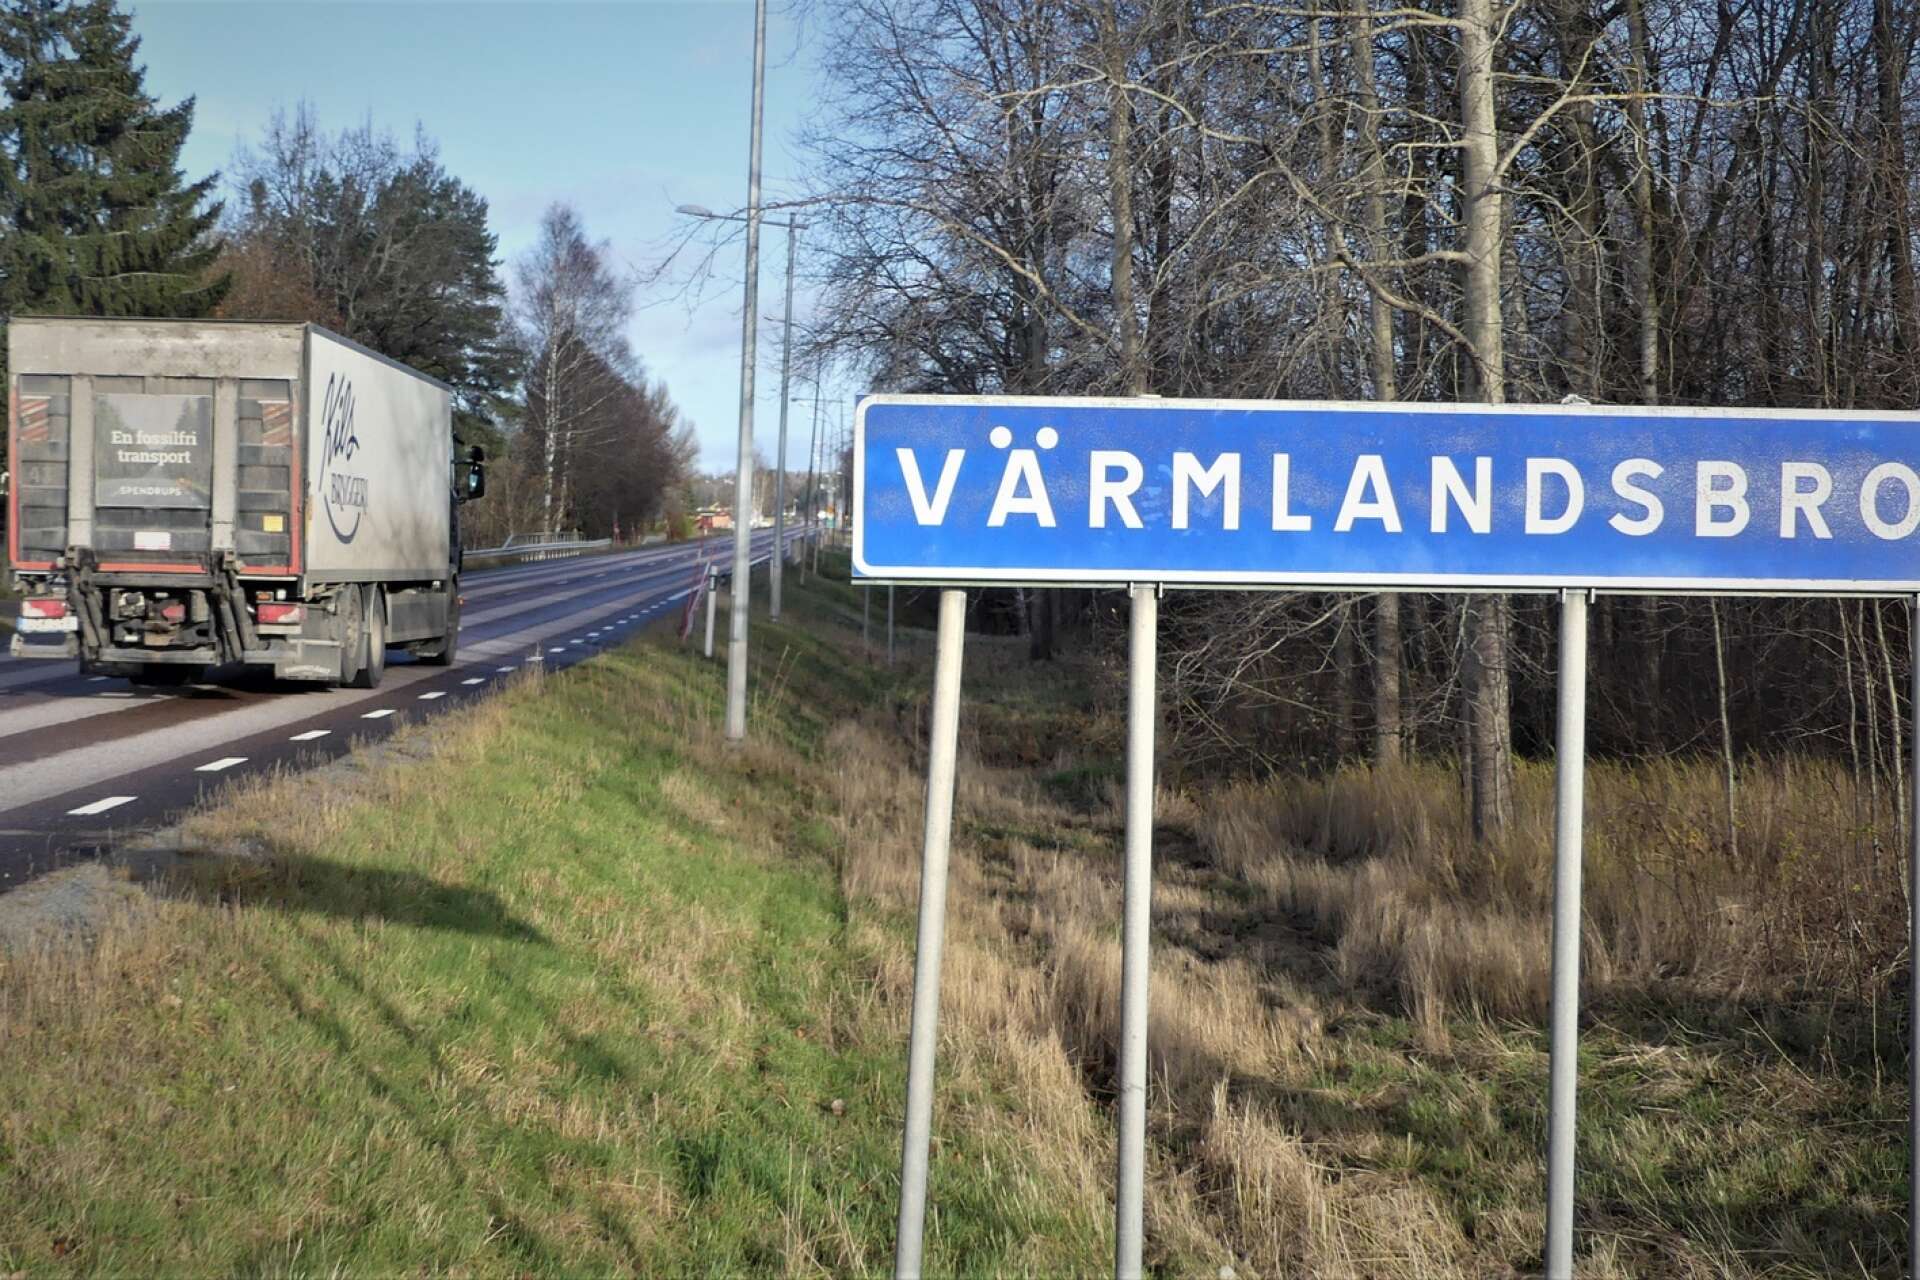 Se till att det blir en hållbar lösning av E45 genom Värmlandsbro, uppmanar skribenten.